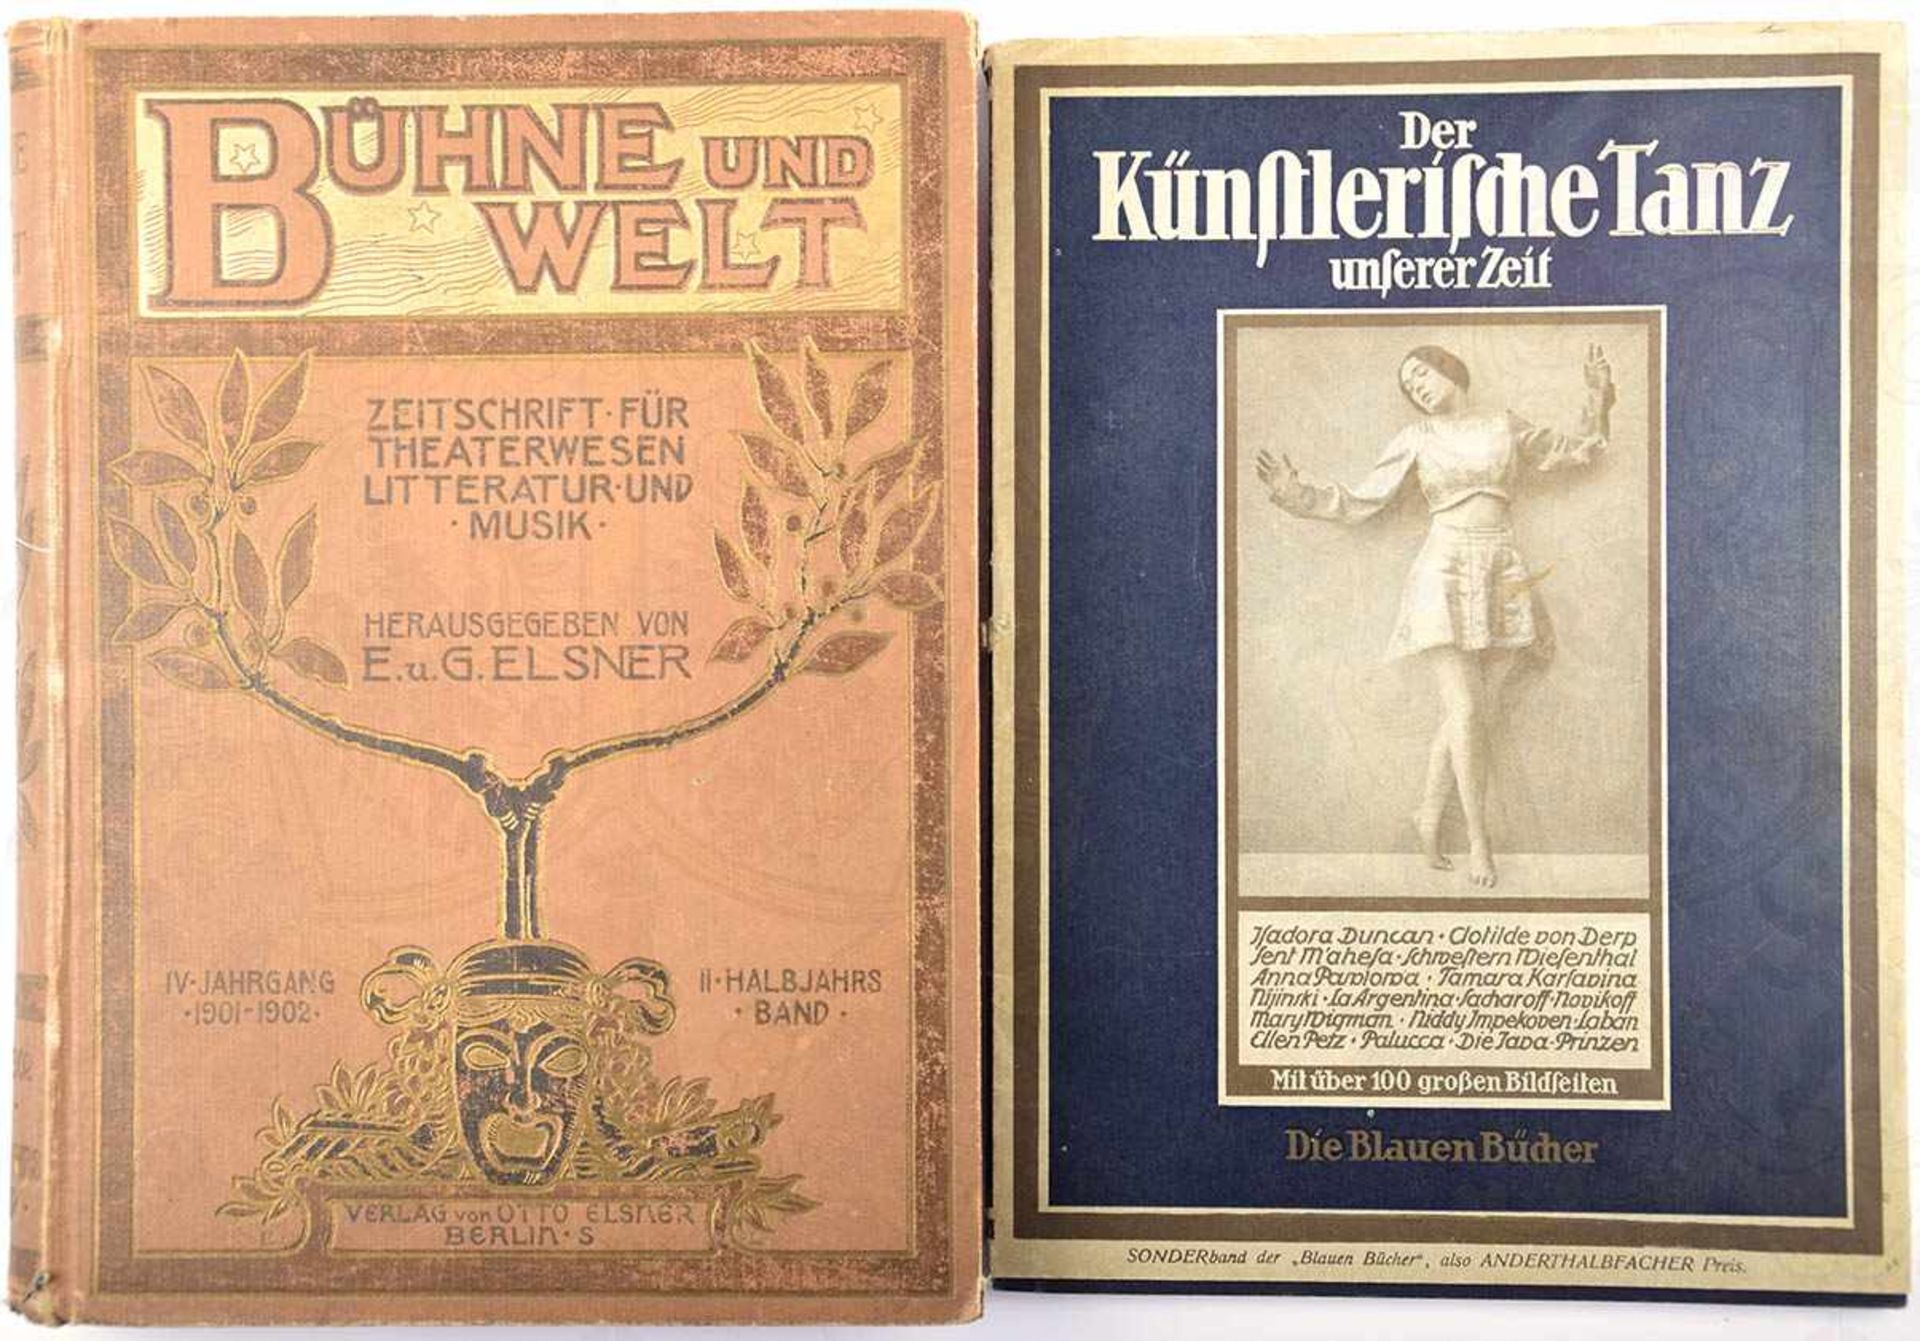 2 TITEL, „Bühne und Welt“, 1902, 528 S., Abb., goldgepr. GLn.; „Der künstlerische Tanz unserer